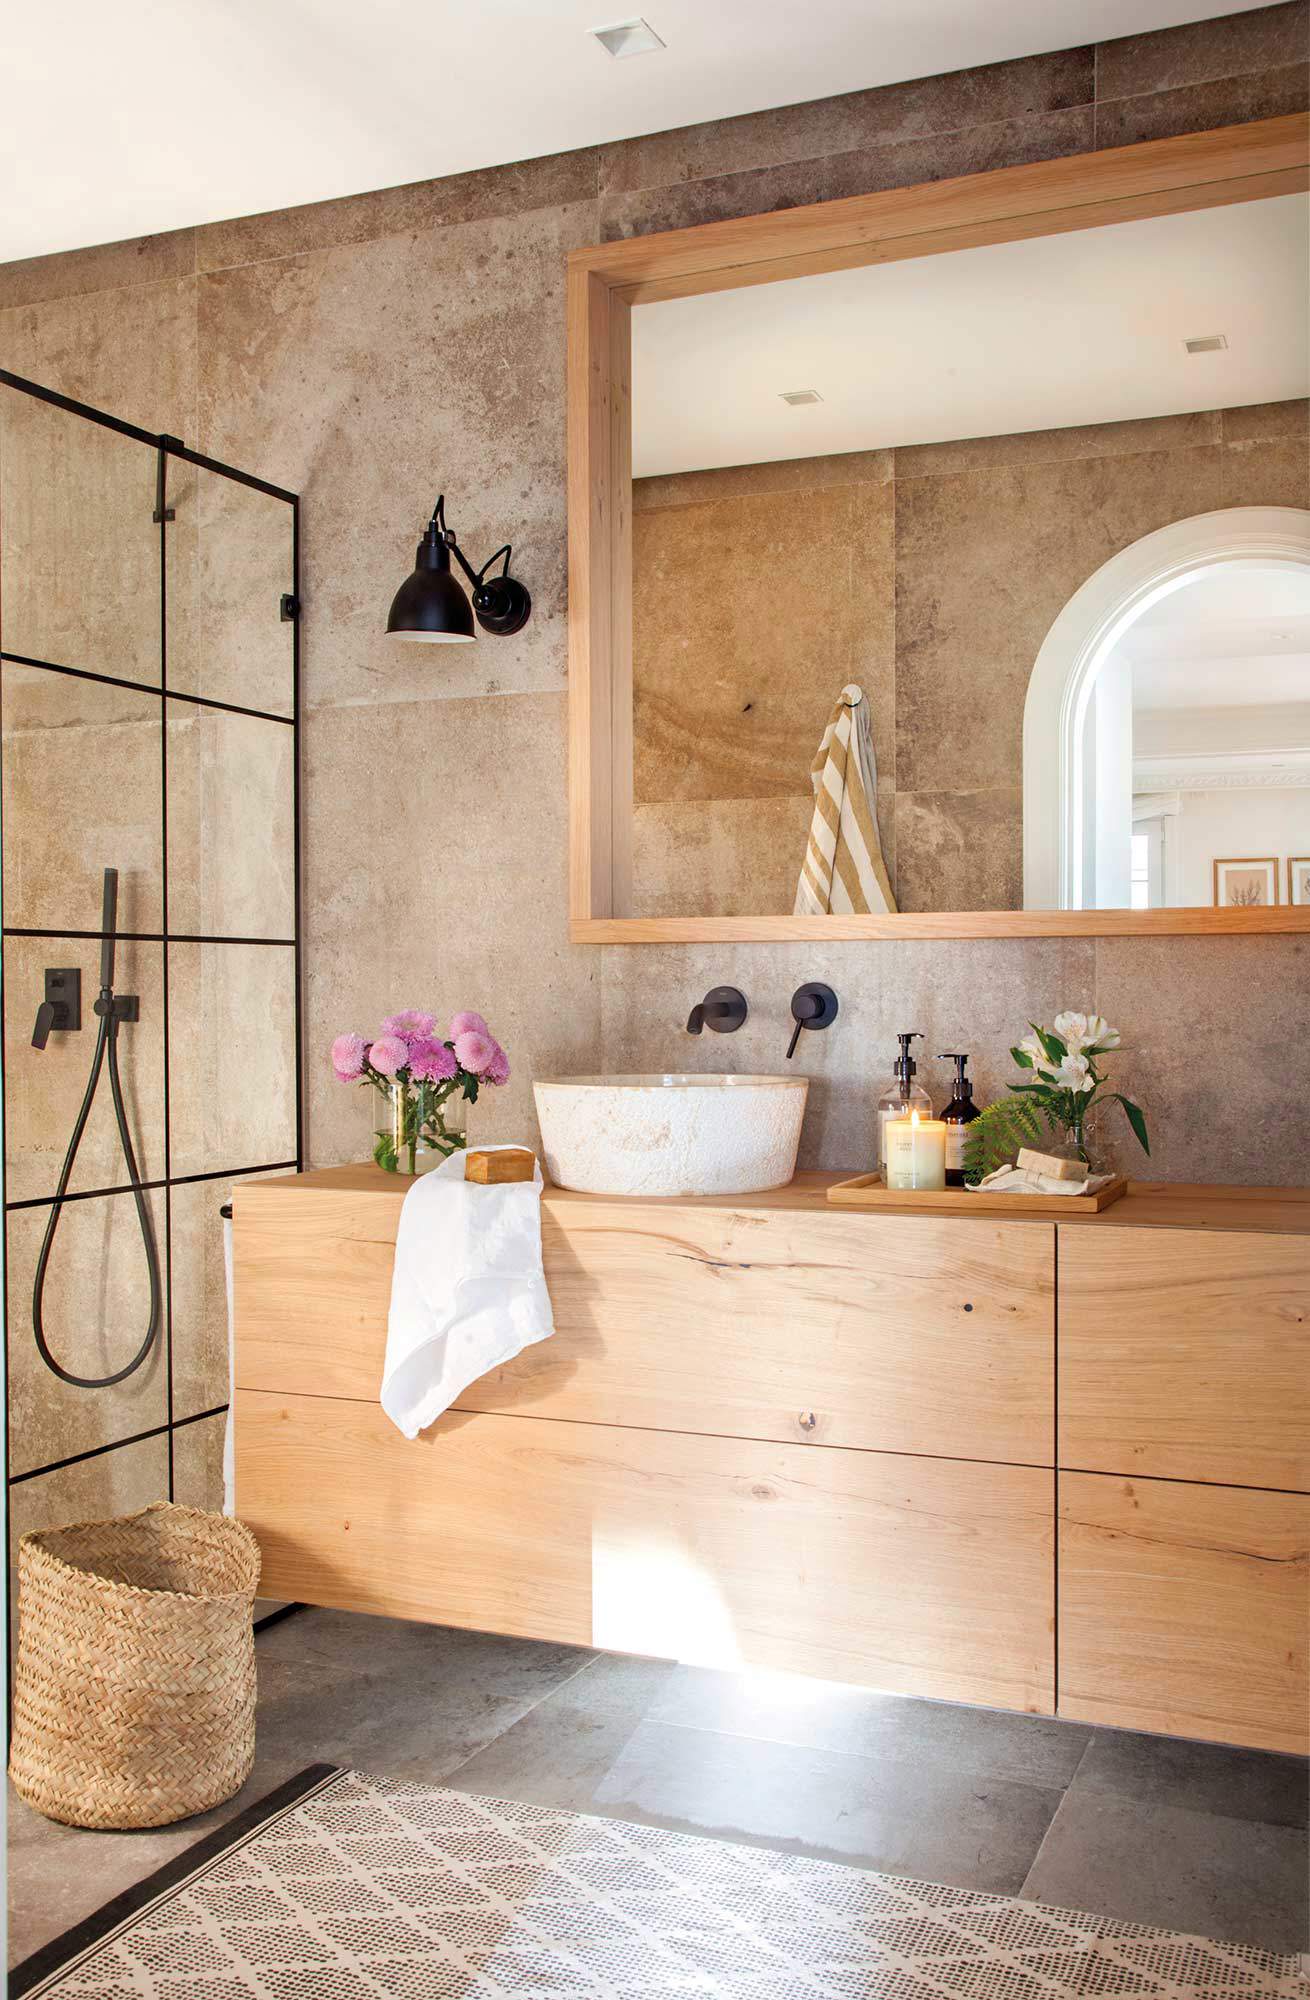 Baño con mueble de madera clara, mampara acristalada, espejo, aplique negro y alfombra